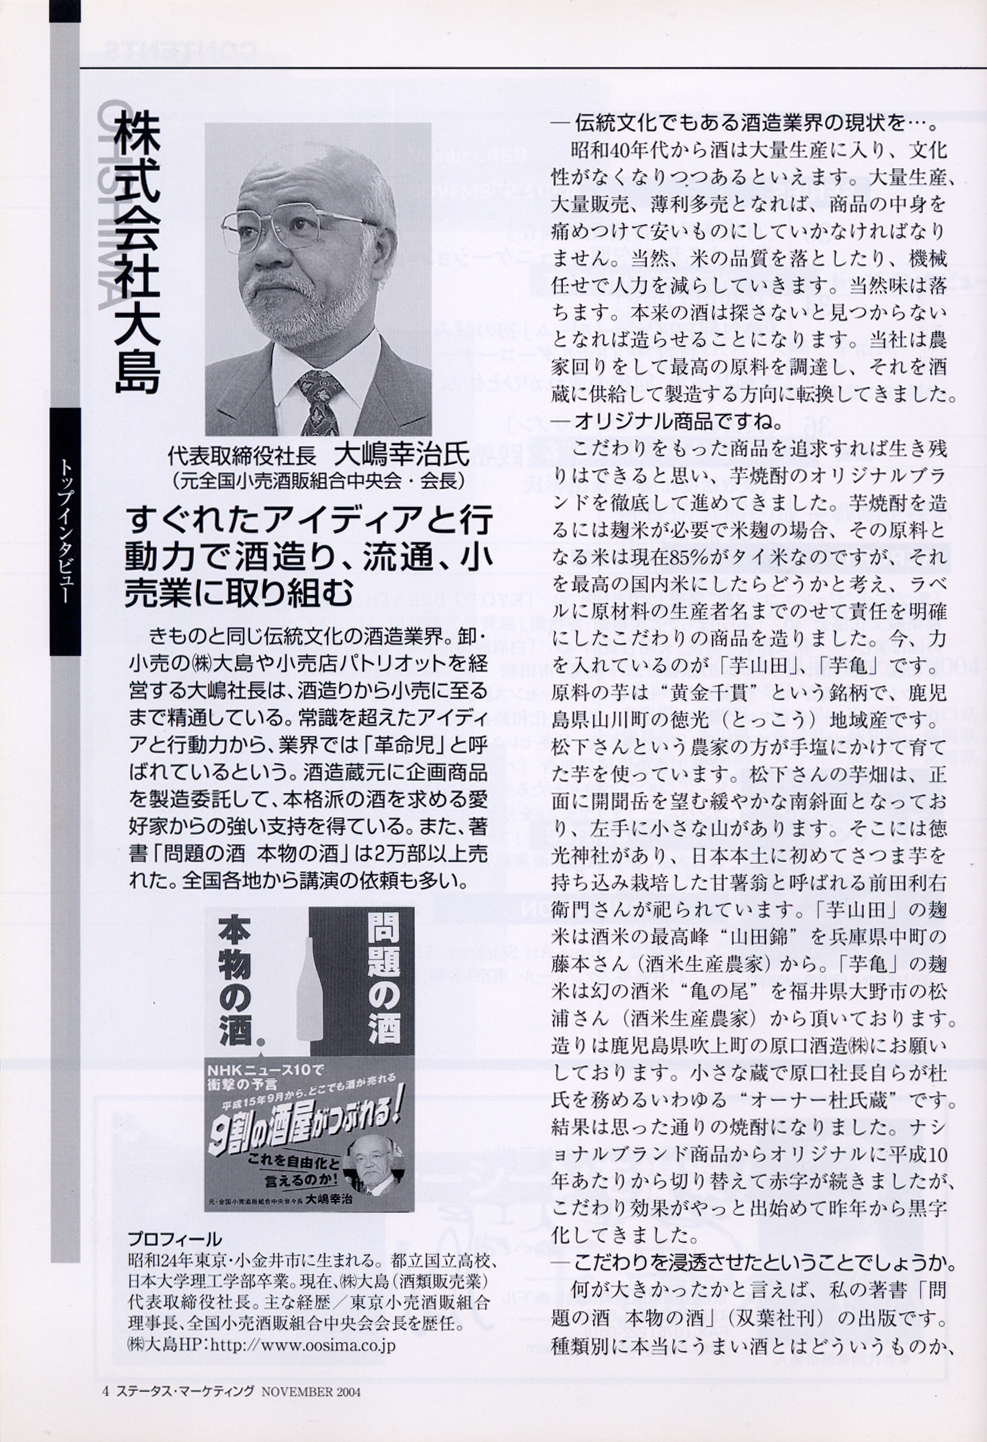 2004年11月 きものと宝飾社 「月刊ステータス・マーケティング」 トップインタビュー